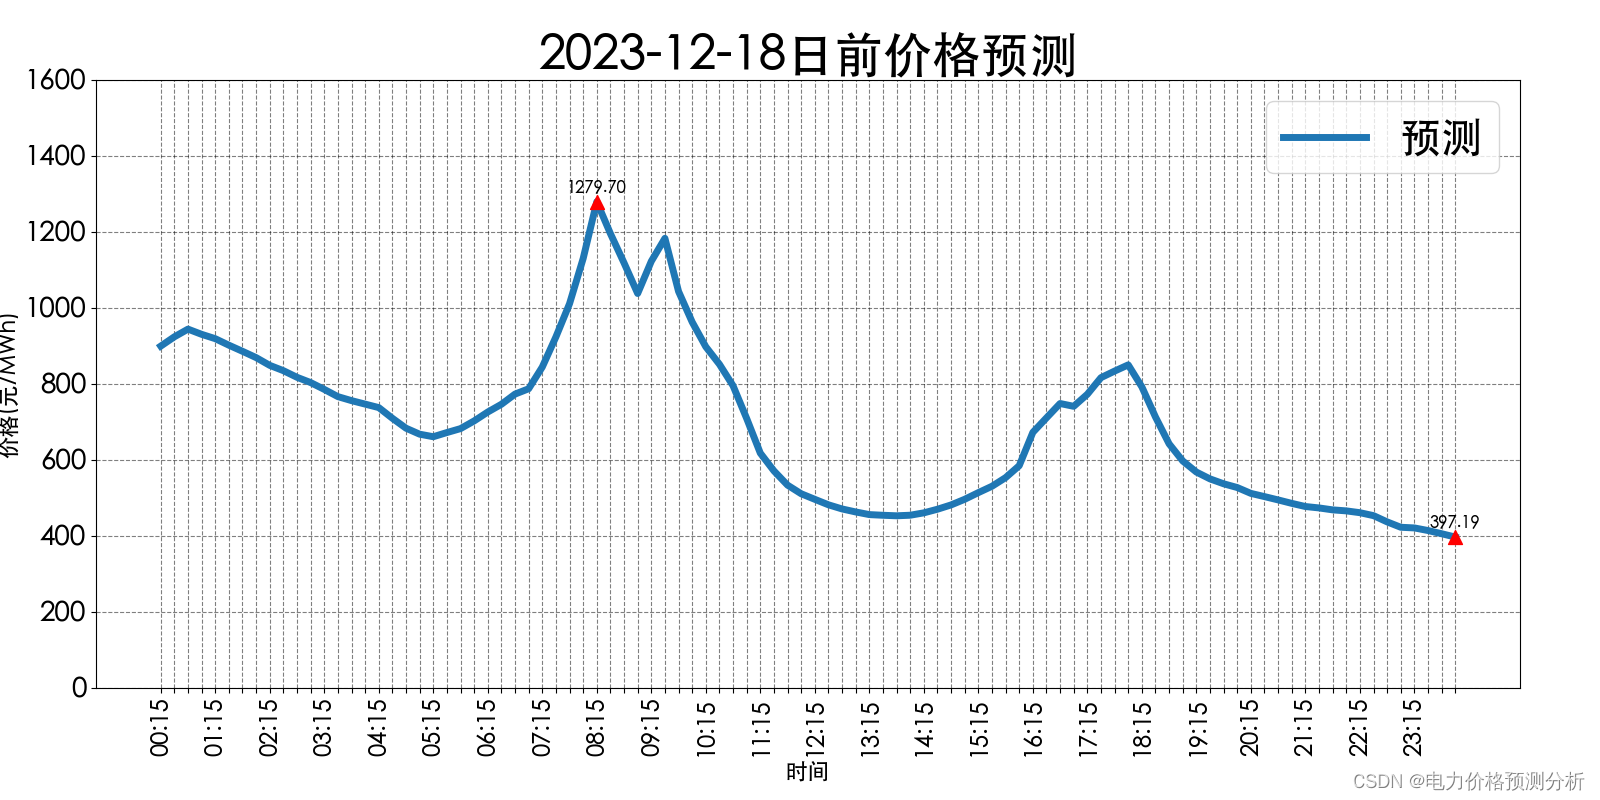 山西电力市场日前价格预测【2023-12-18】